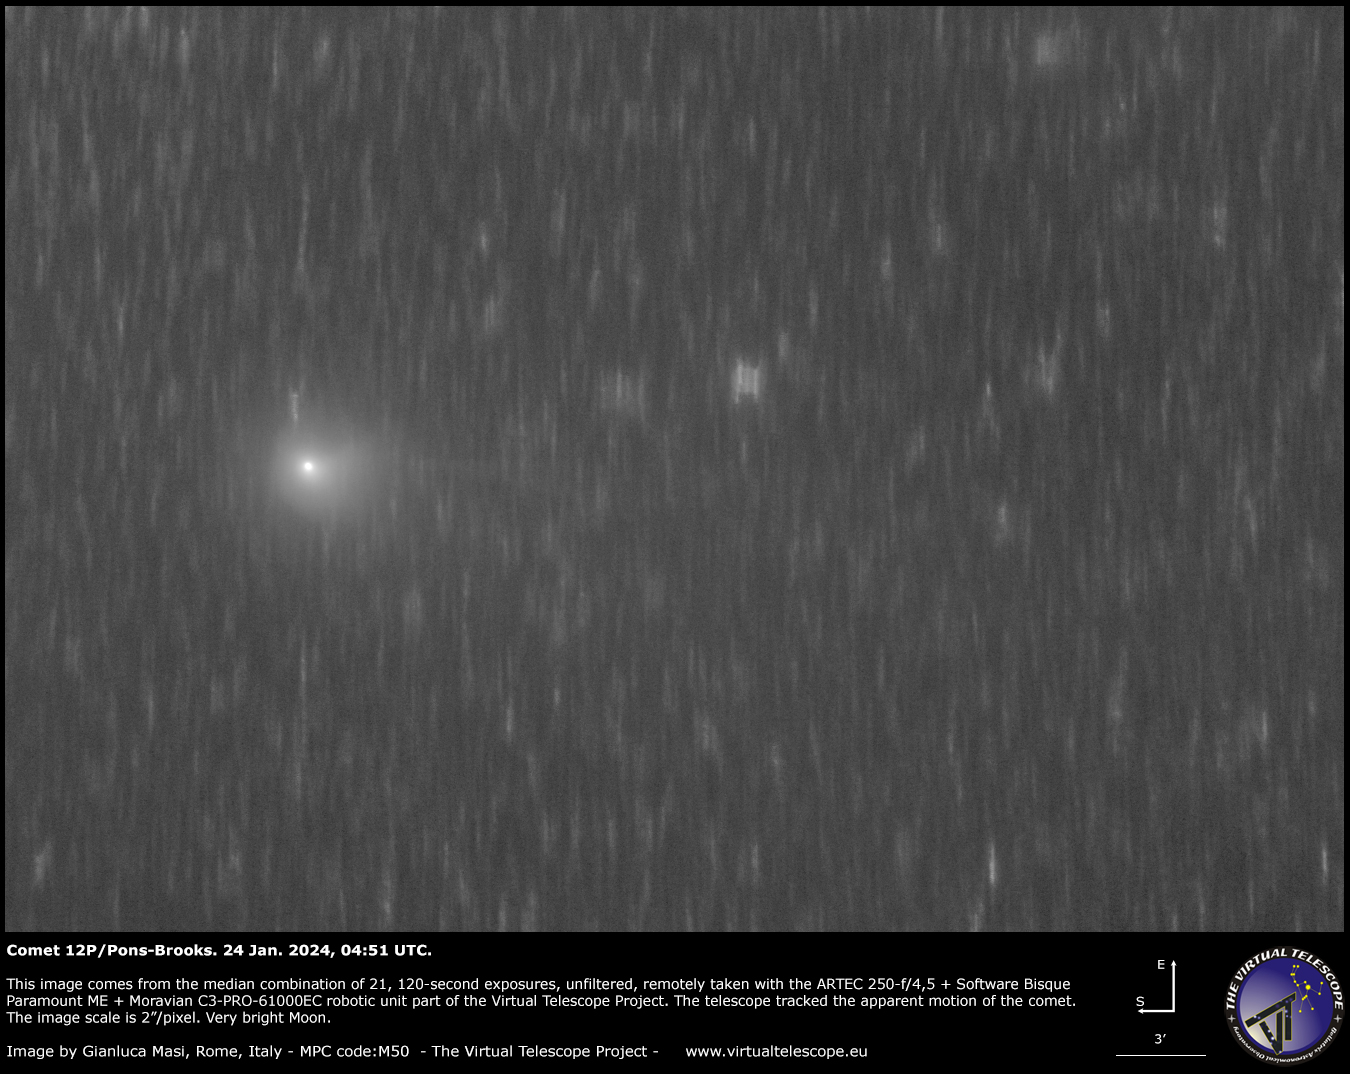 Cometa 12P/Pons-Brooks: Nueva imagen – 23 y 24 de enero de 2024